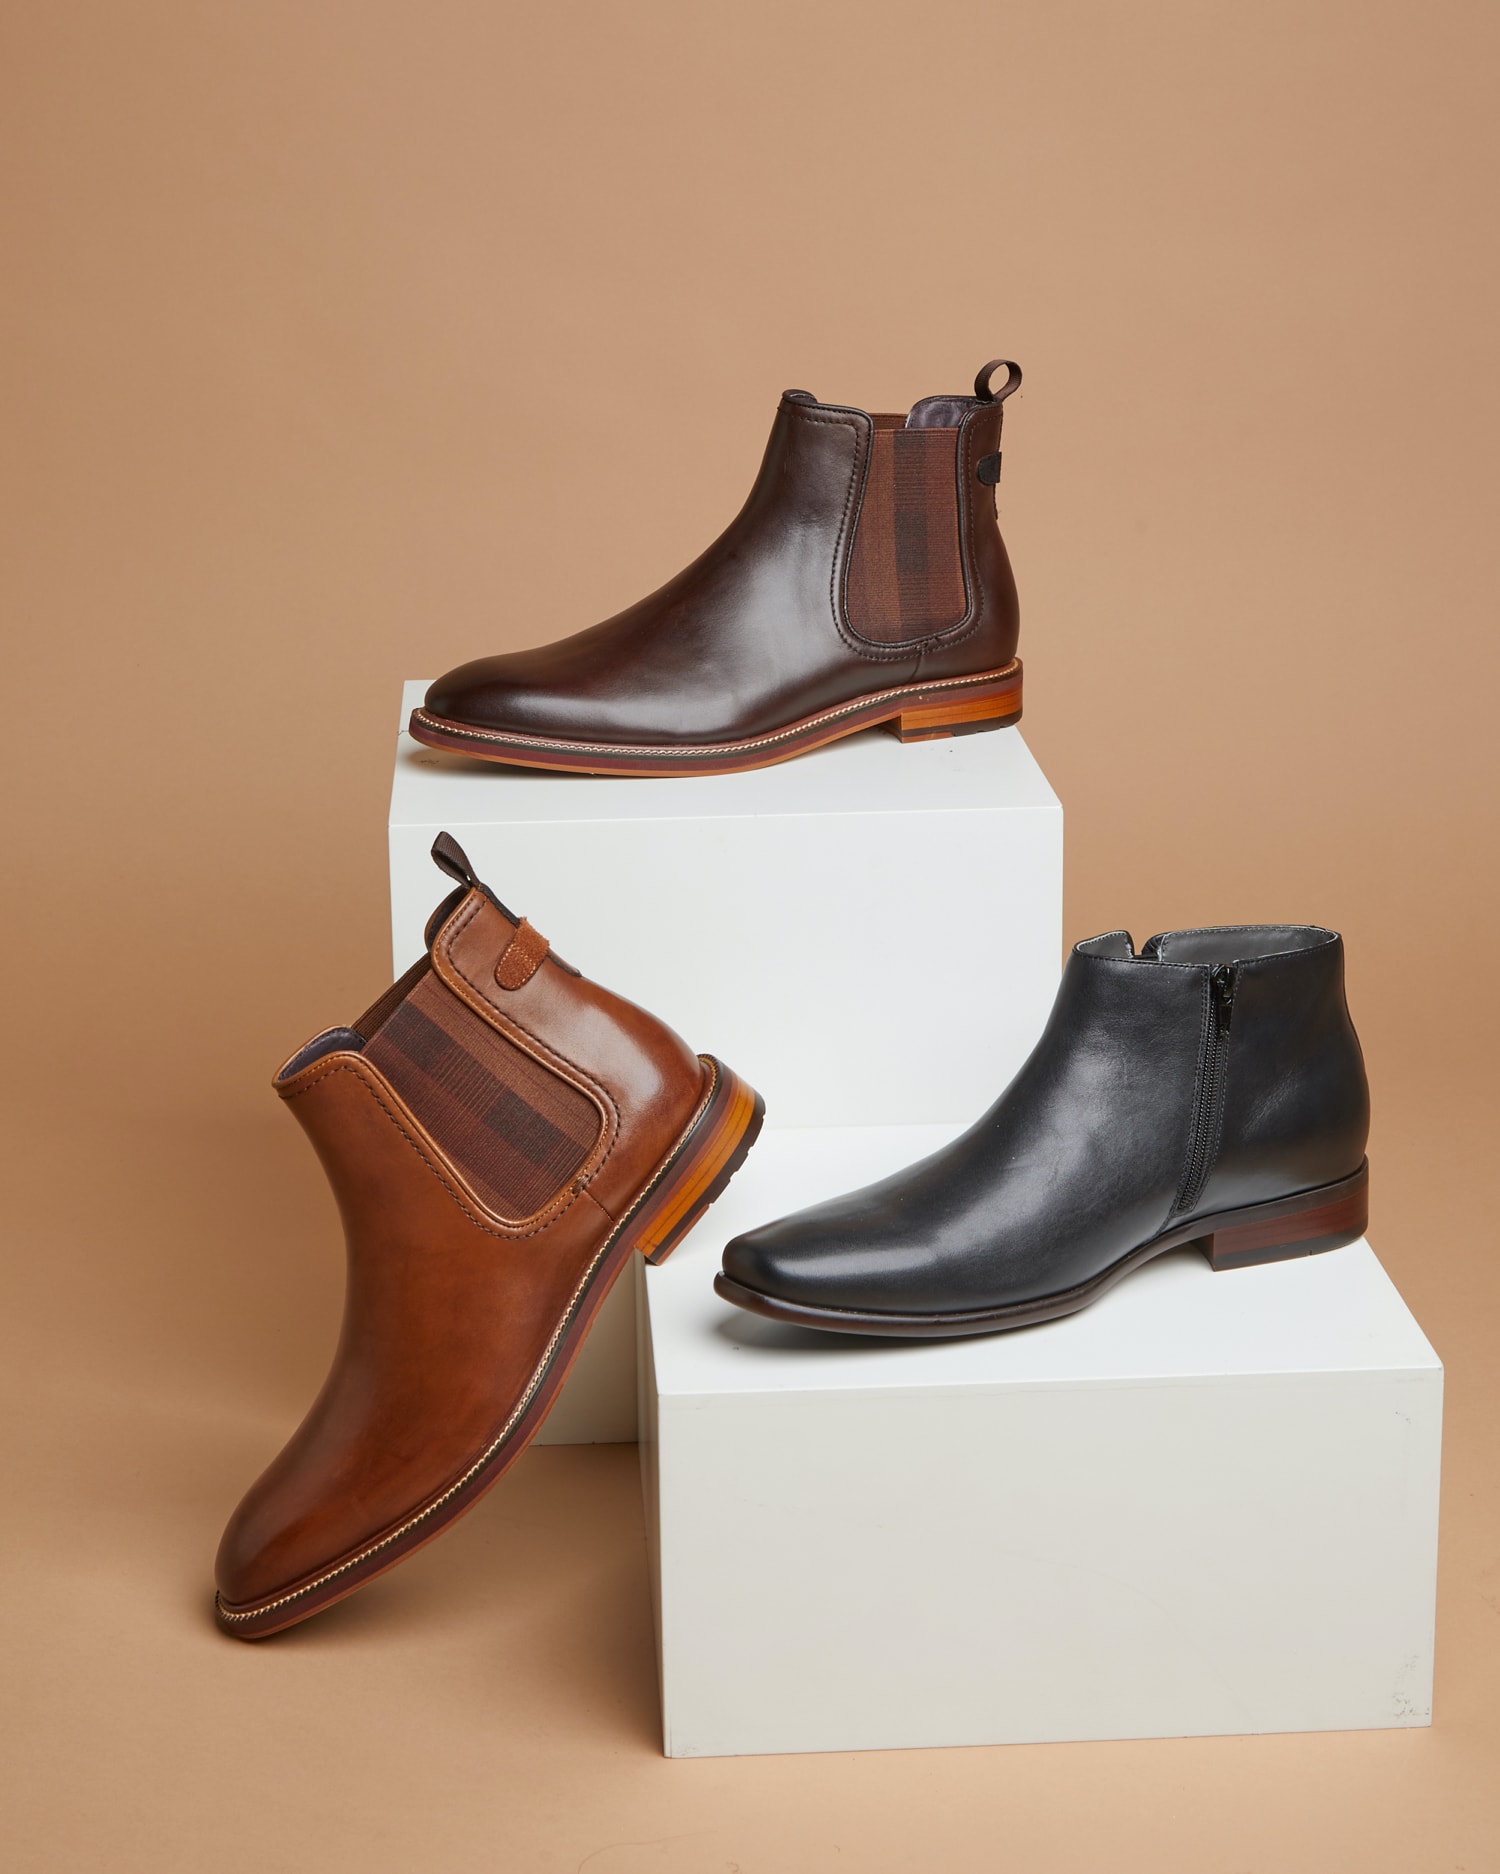 Hvornår Vidunderlig byrde Boot Week: The Shoes That Belong in Every Man's Wardrobe